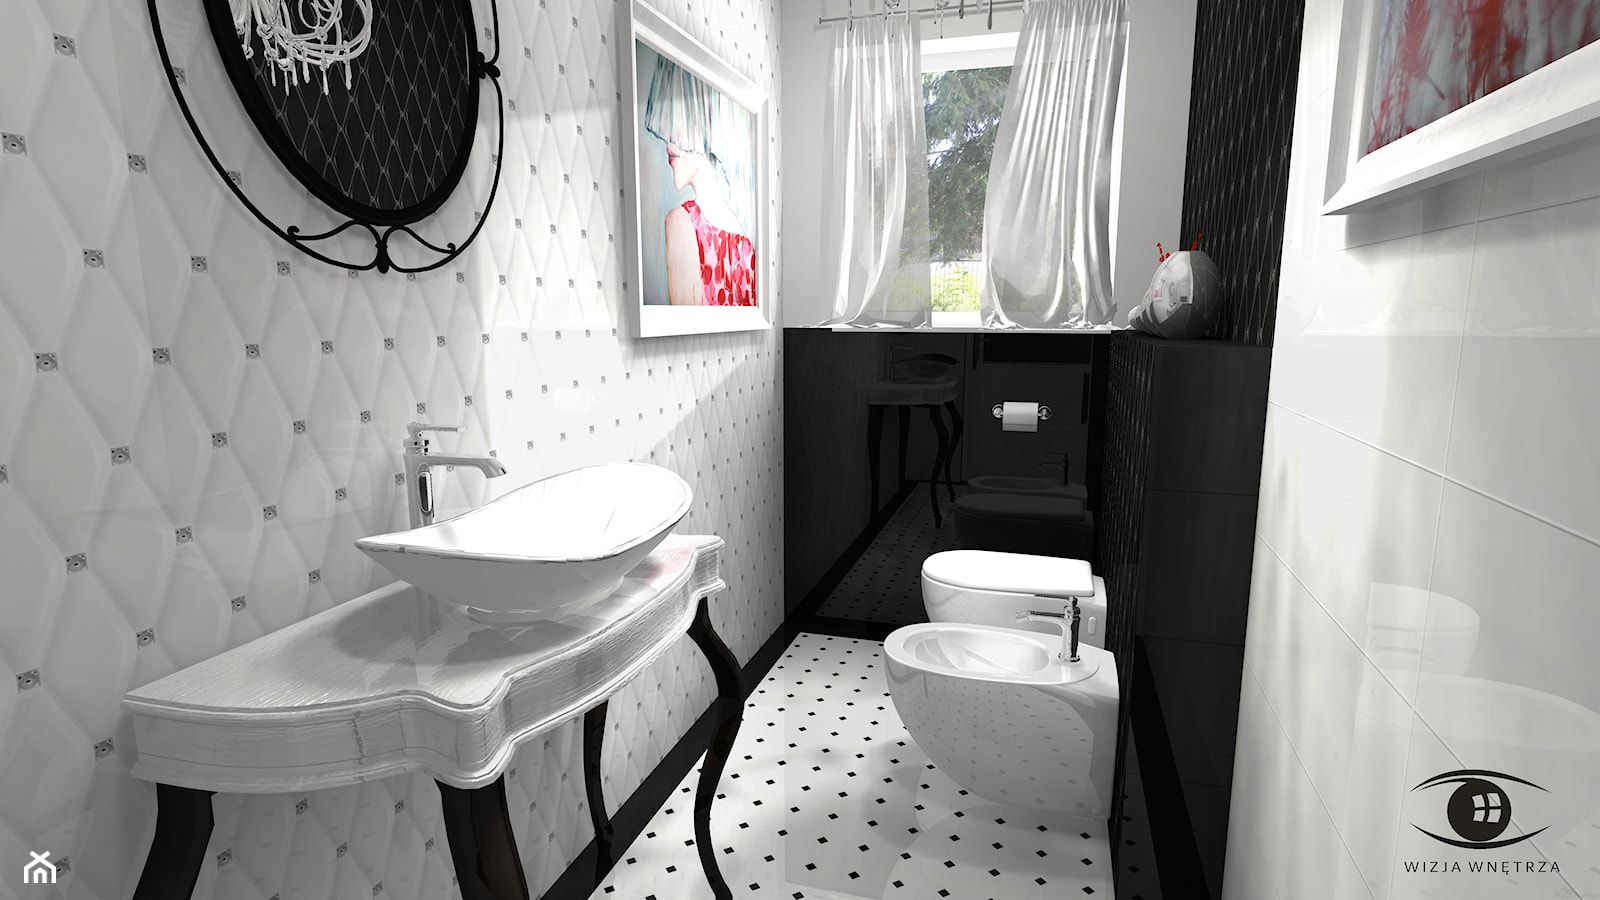 TOALETA GLAMOUR - Mała łazienka z oknem, styl glamour - zdjęcie od Wizja Wnętrza - projekty i aranżacje - Homebook